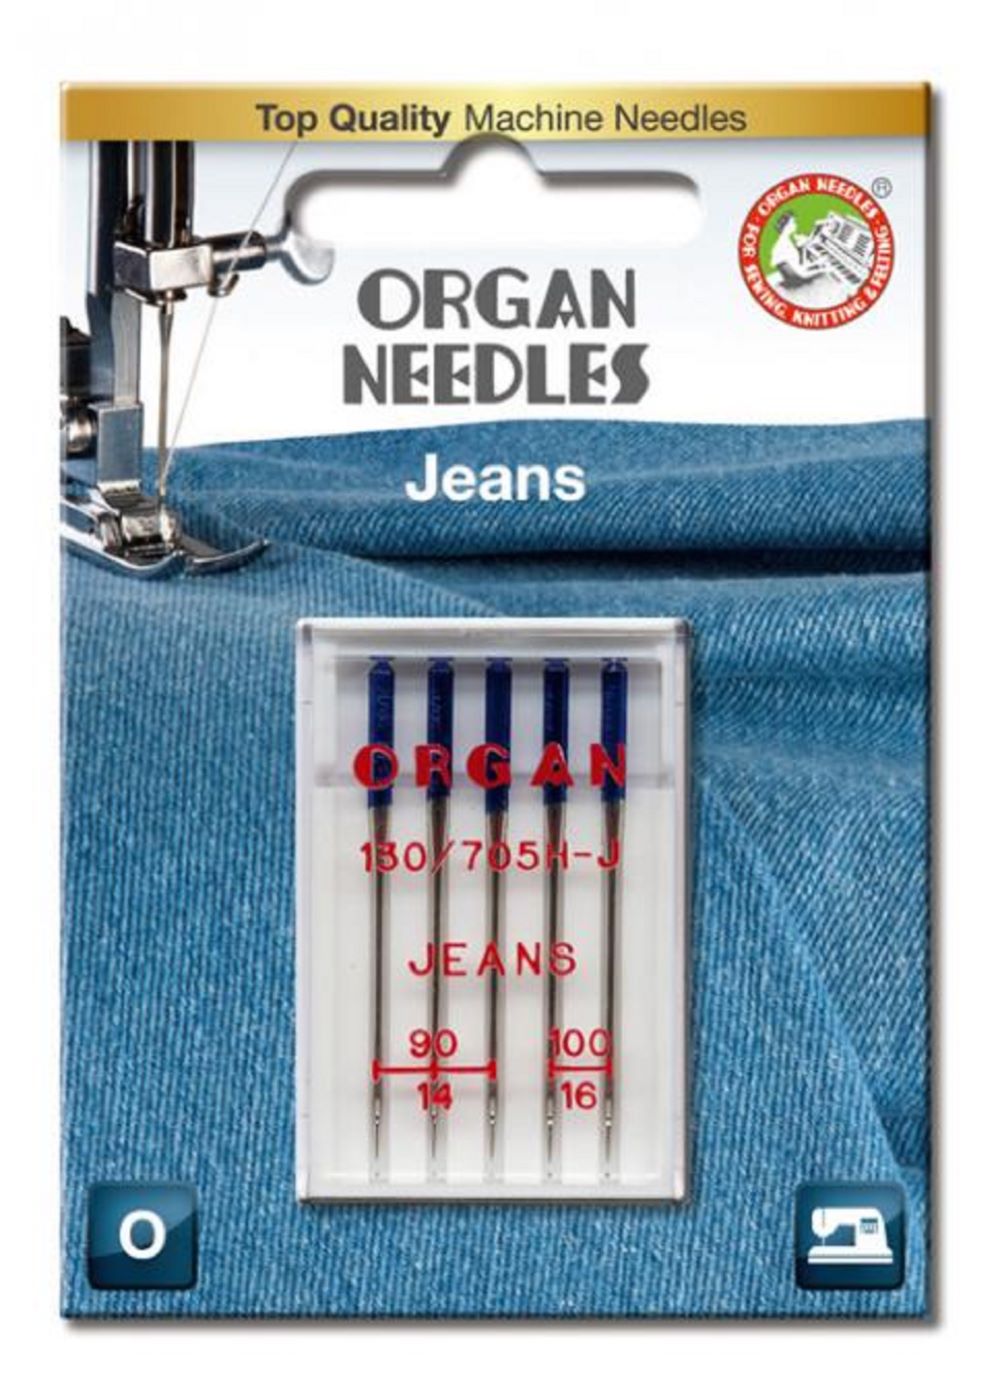 Organ Maschinennadeln 130/705 H Jeans 090/100 á 5 Blister